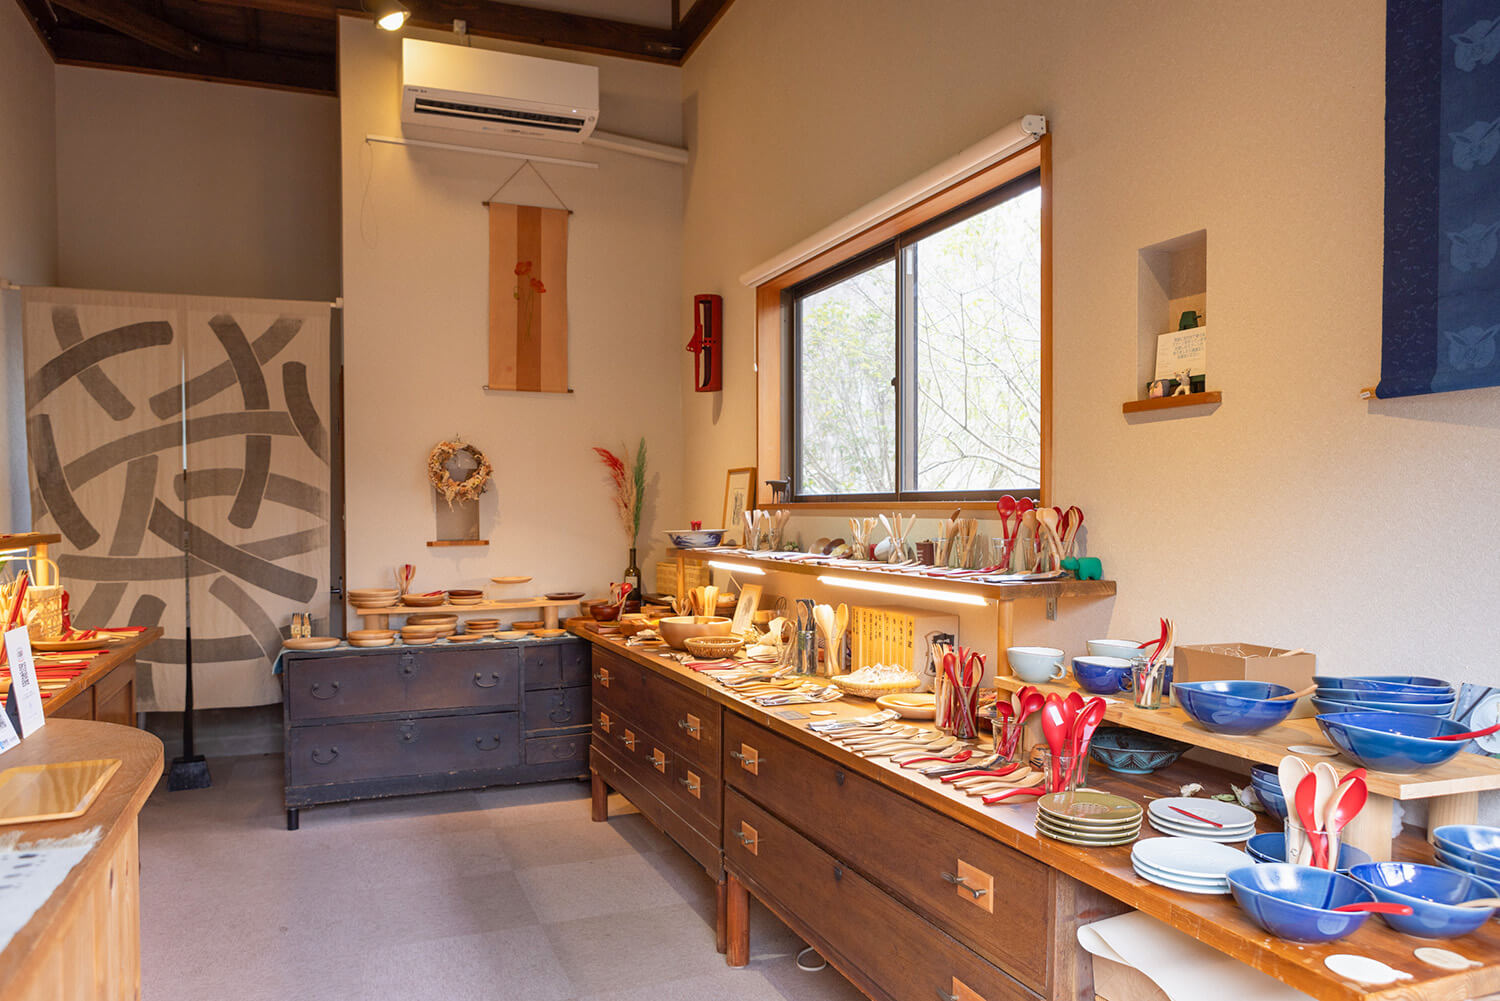 オリジナル作品以外に、工房の作品と相性のいい陶磁器や竹細工など、九州の作家もののアイテムも取り扱う